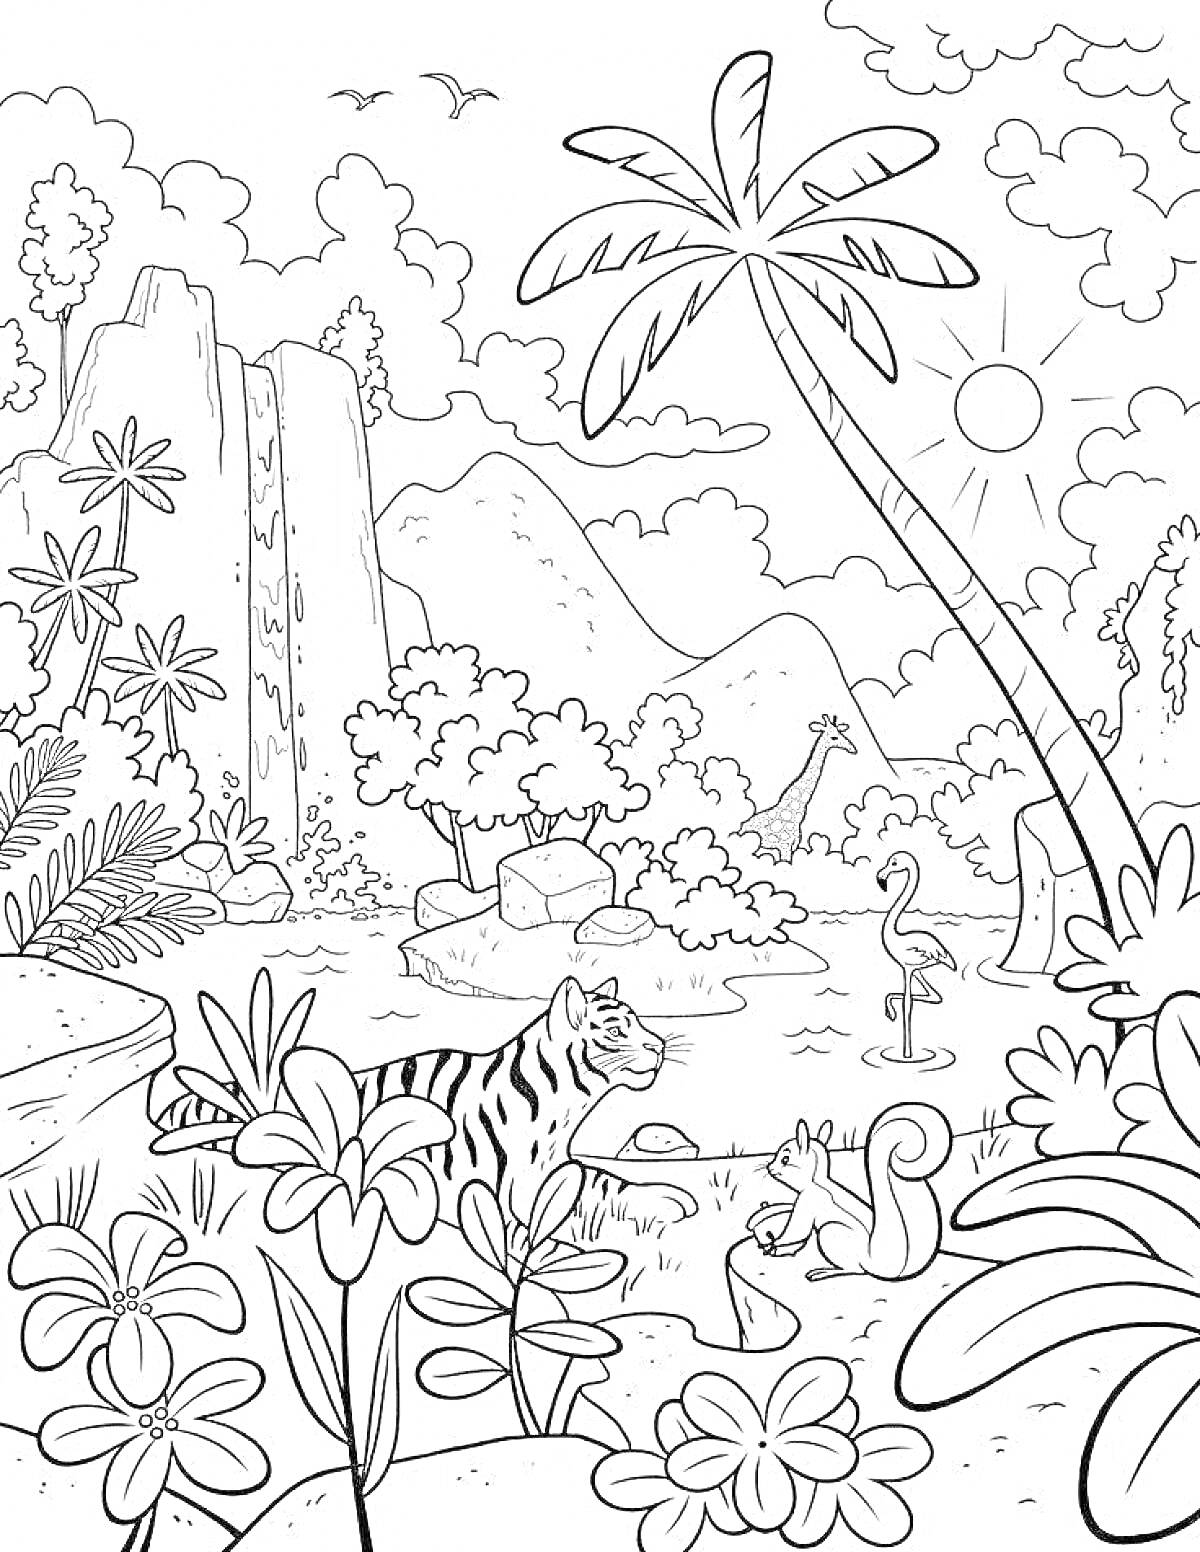 На раскраске изображено: Природа, Тропический лес, Тигр, Белка, Водопад, Солнце, Горы, Кусты, Цветы, Пальмы, Птица, Жирафы